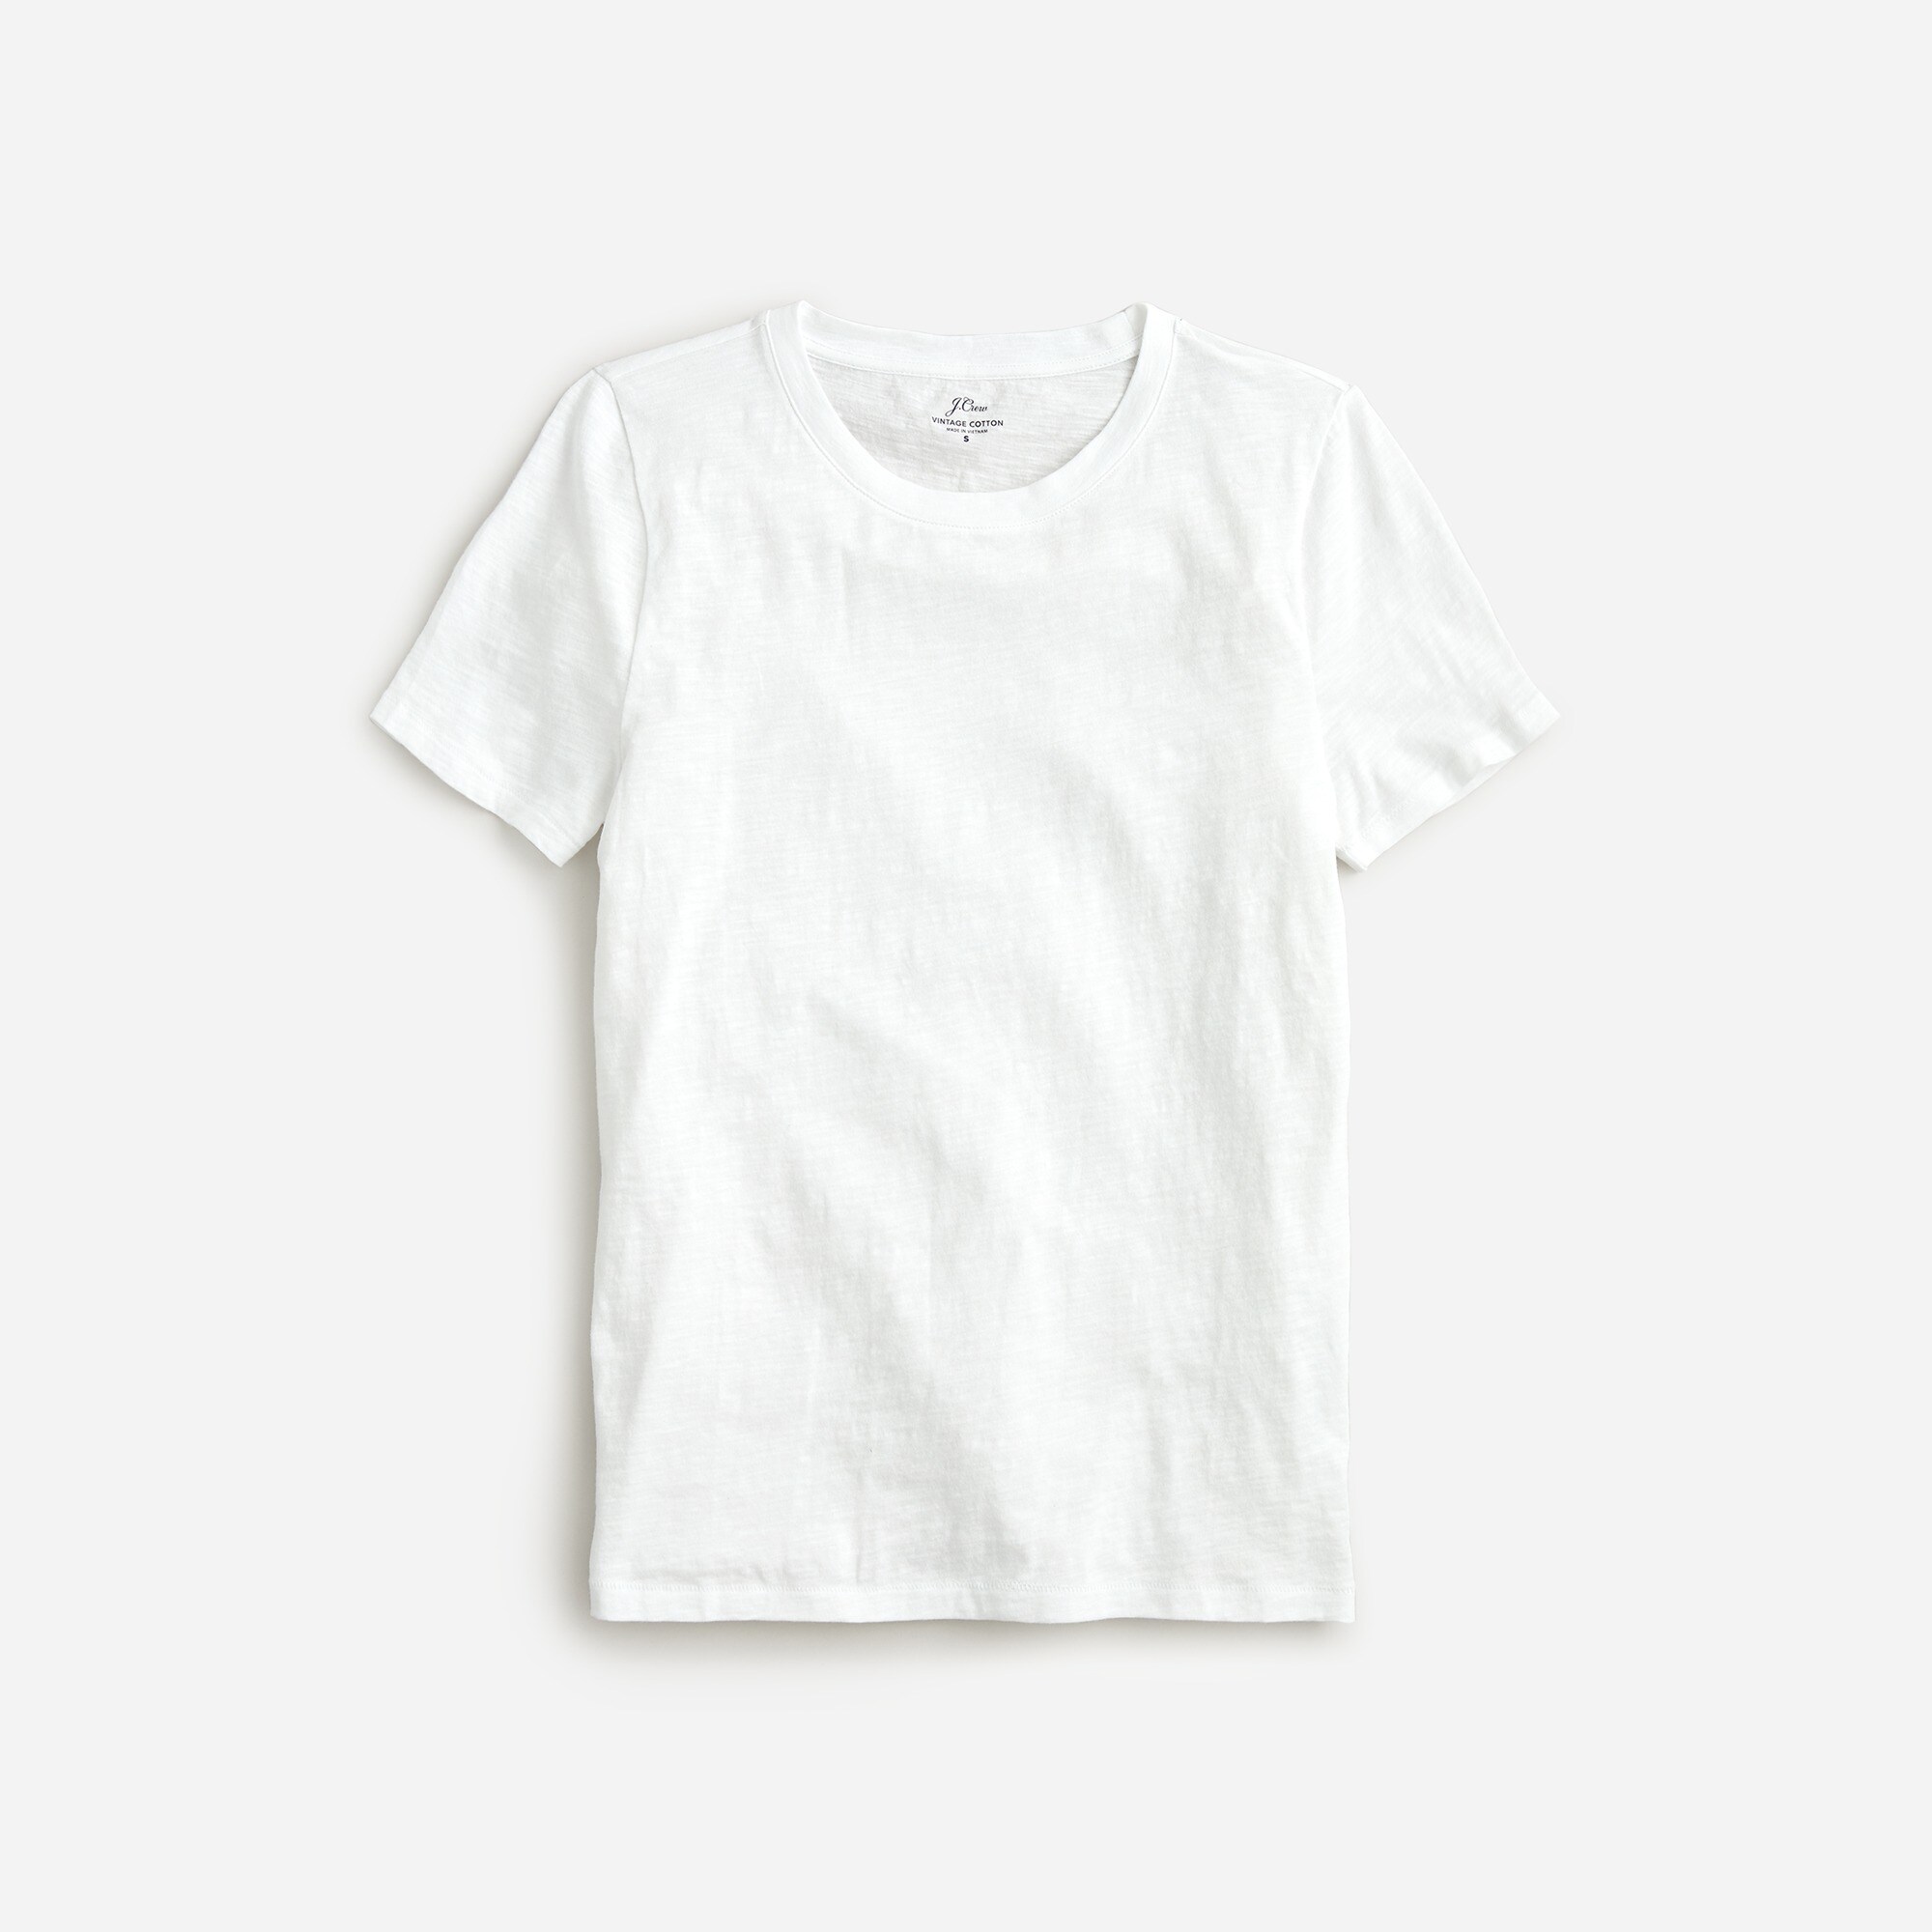  Vintage cotton crewneck T-shirt